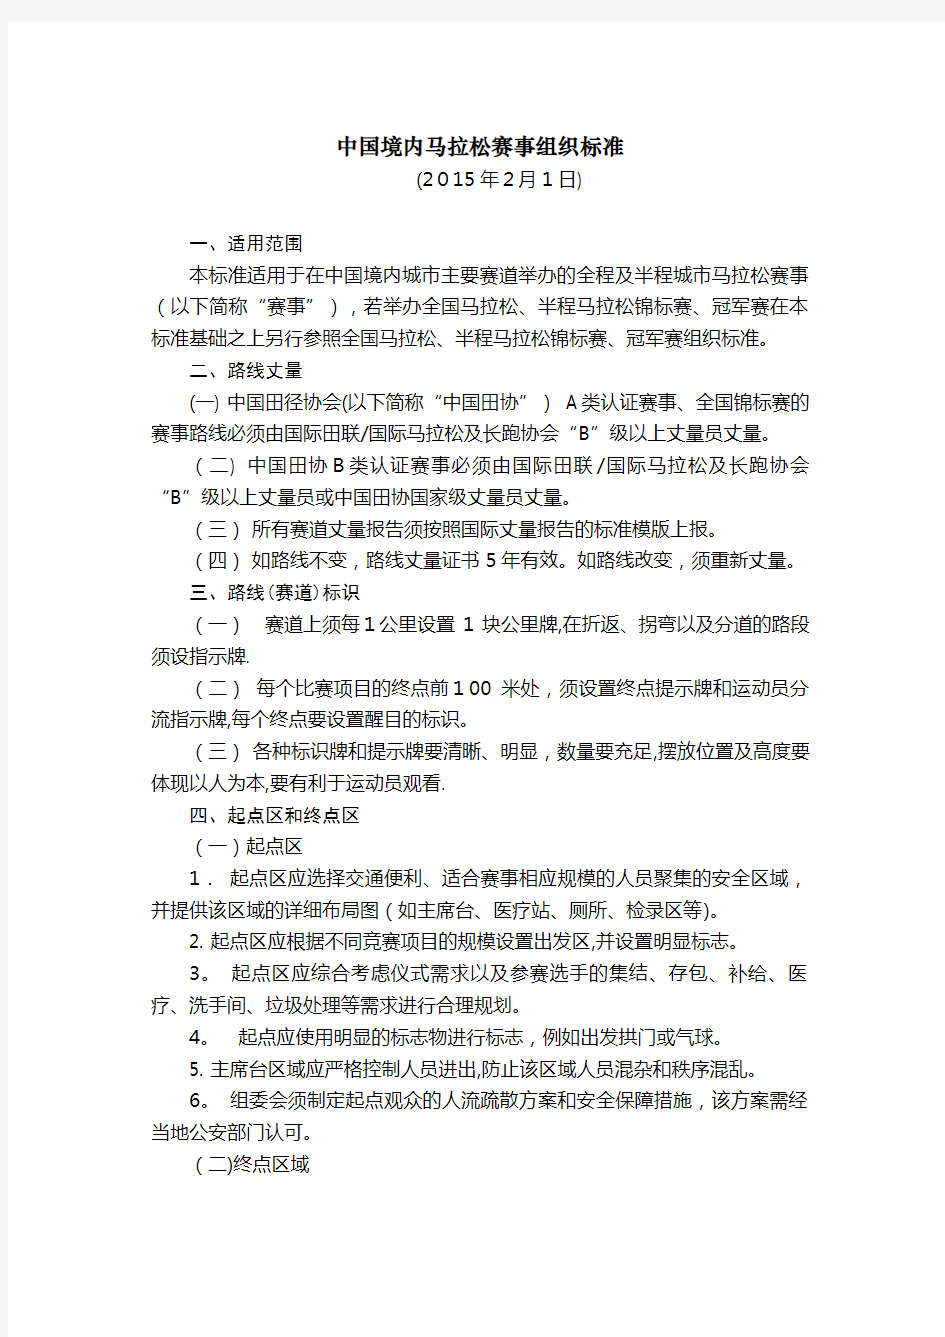 中国境内马拉松赛事组织标准 (2).doc